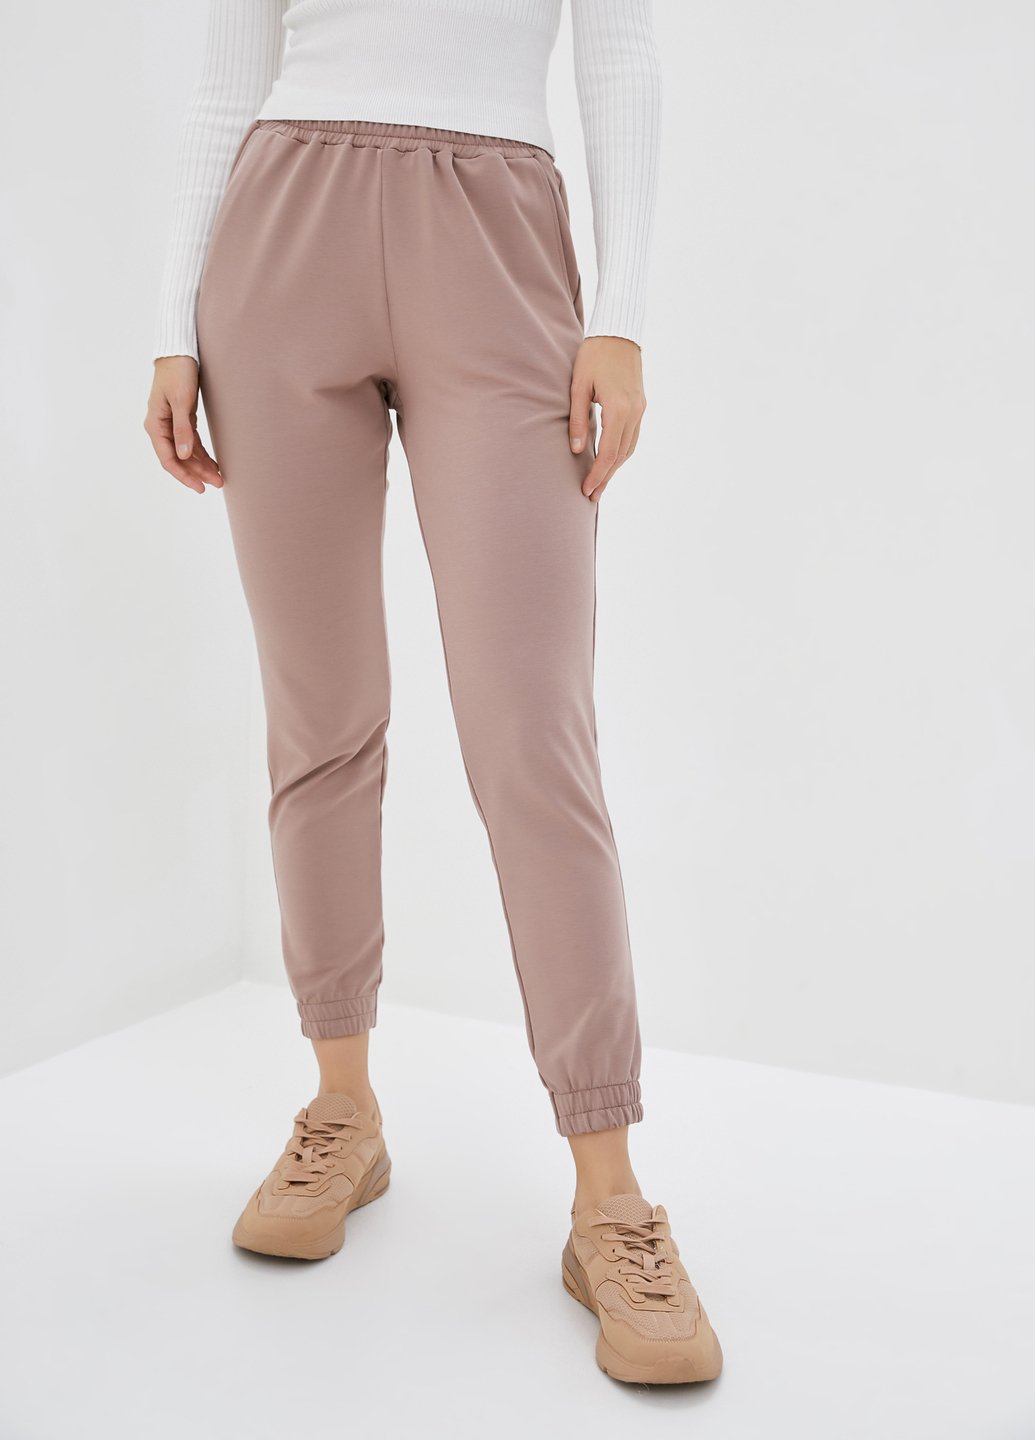 Купить Спортивные штаны женские Merlini Сити 600000059 - Пудровый, 42-44 в интернет-магазине